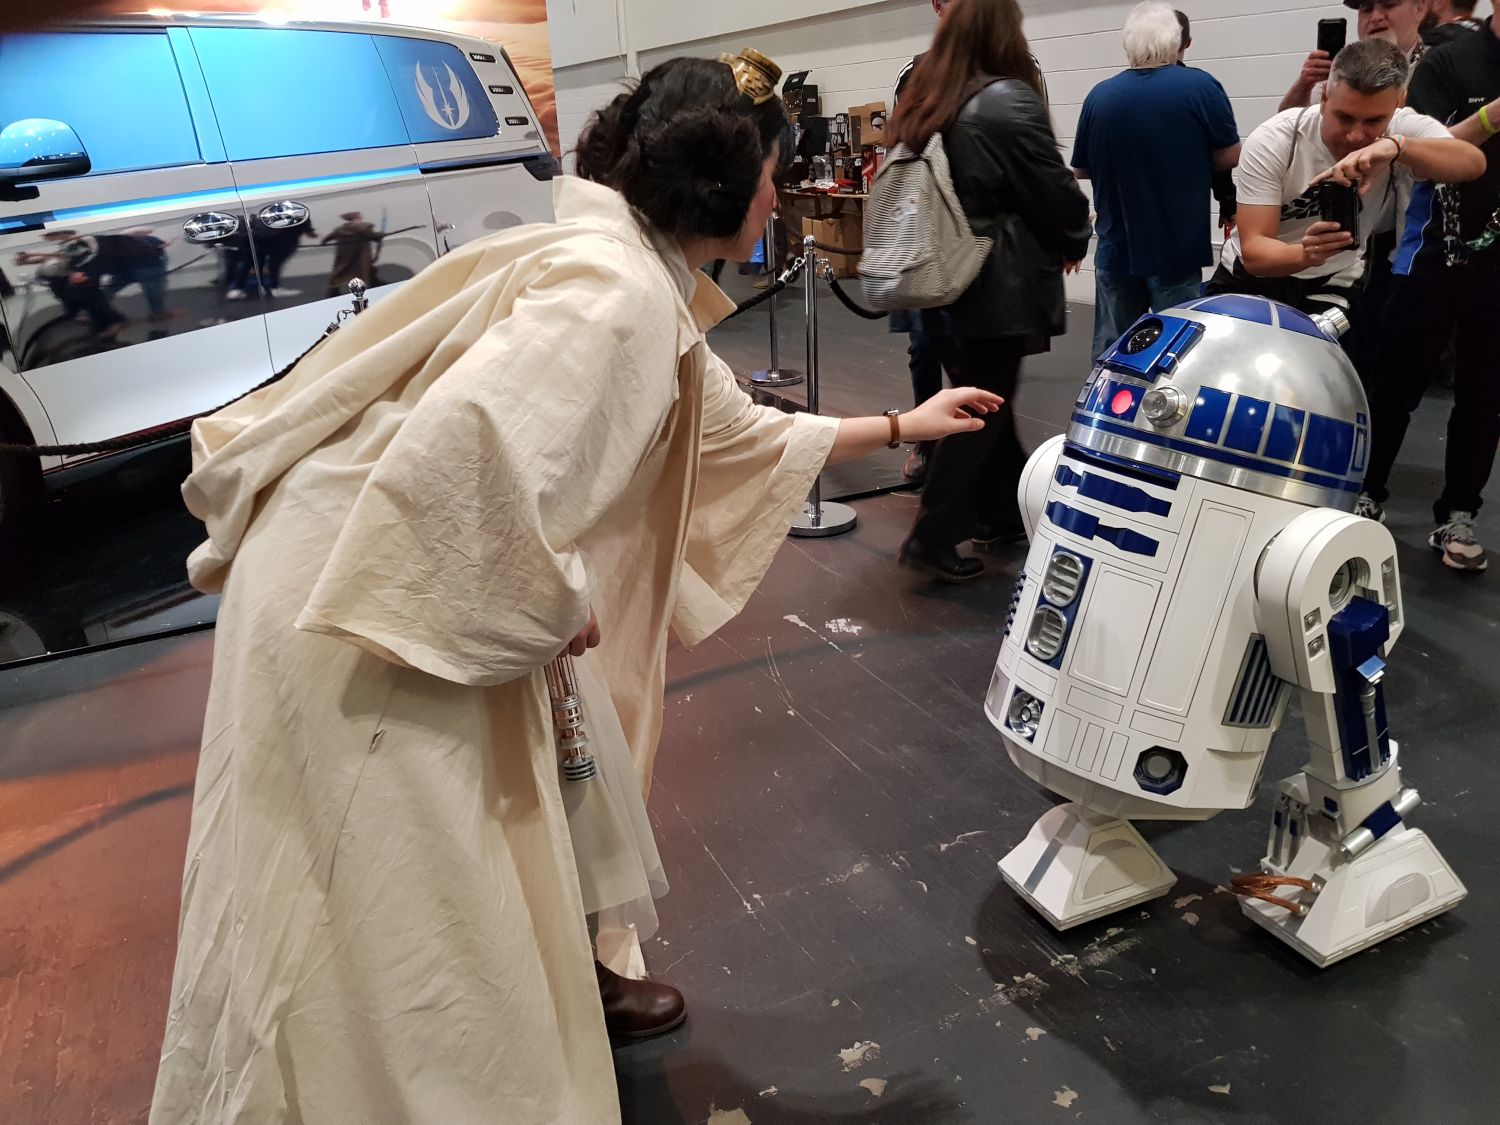 A nagy találkozások egyike - Leia hercegnő és R2-D2.